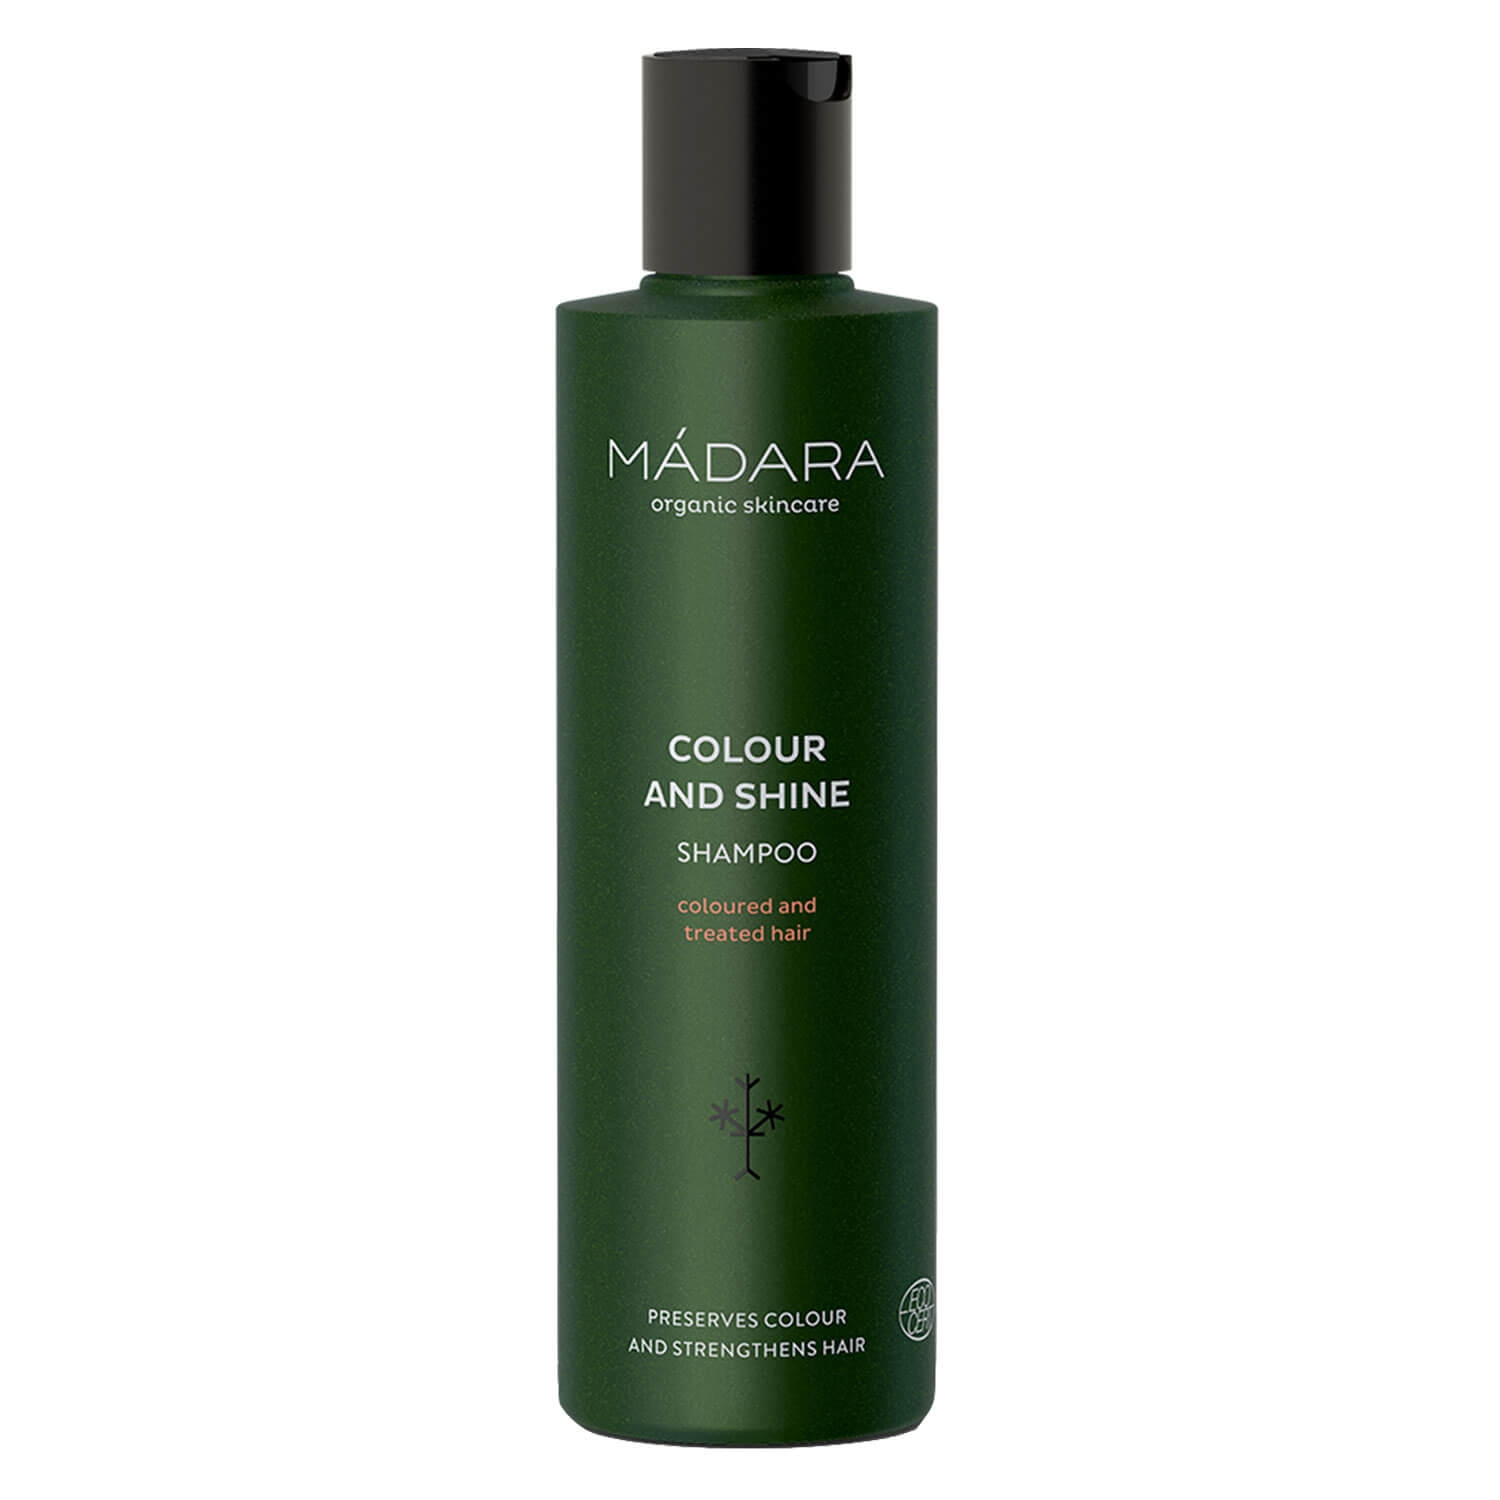 Produktbild von MÁDARA Hair Care - Colour and Shine Conditioner